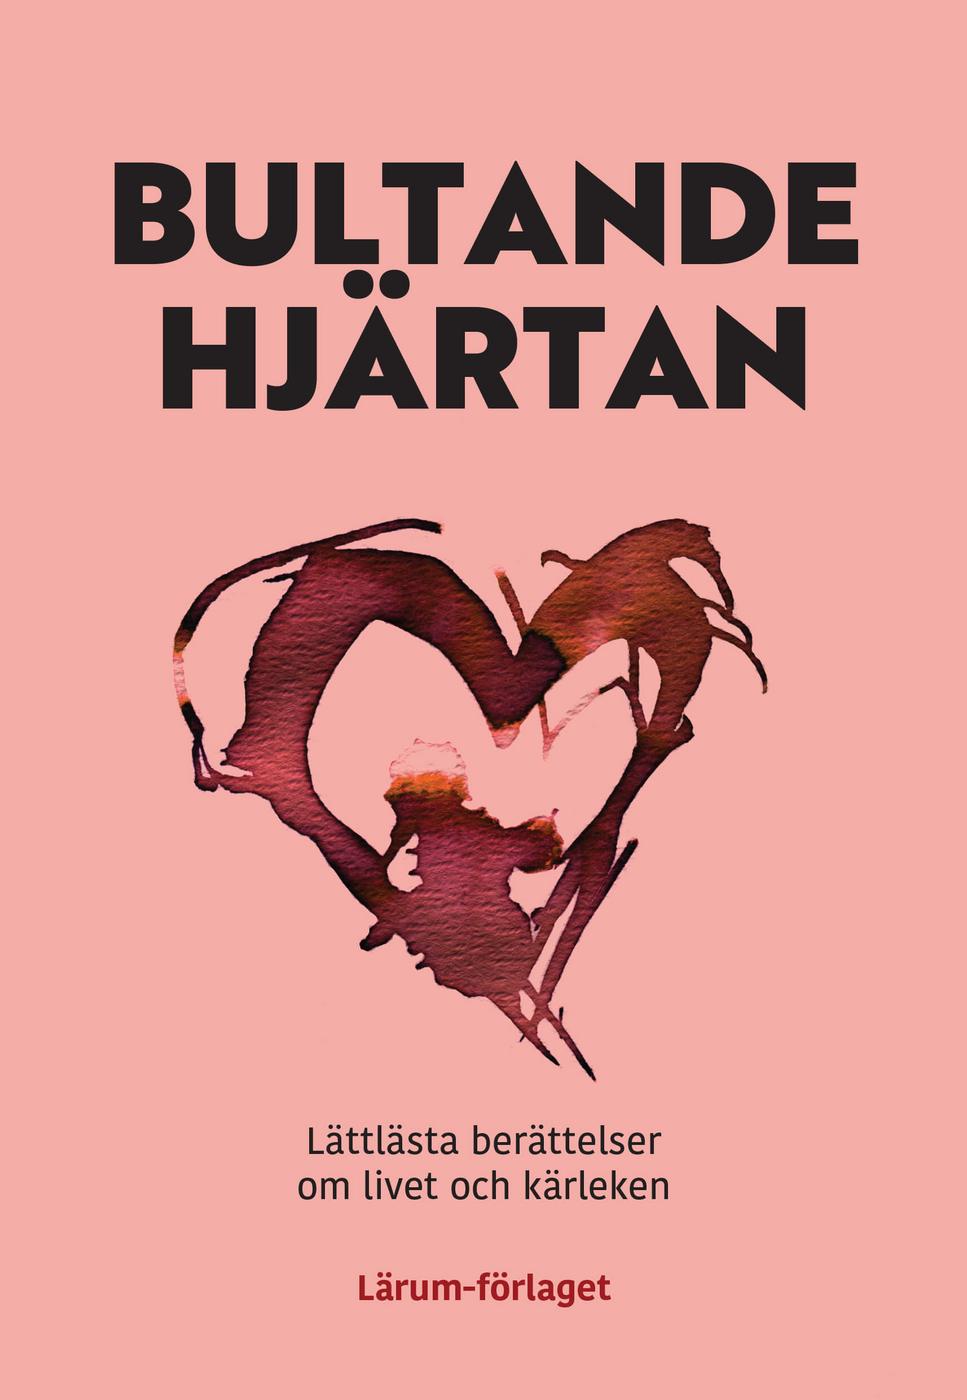 Ljusrött bokomslag med titeln "Bultande hjärtan".